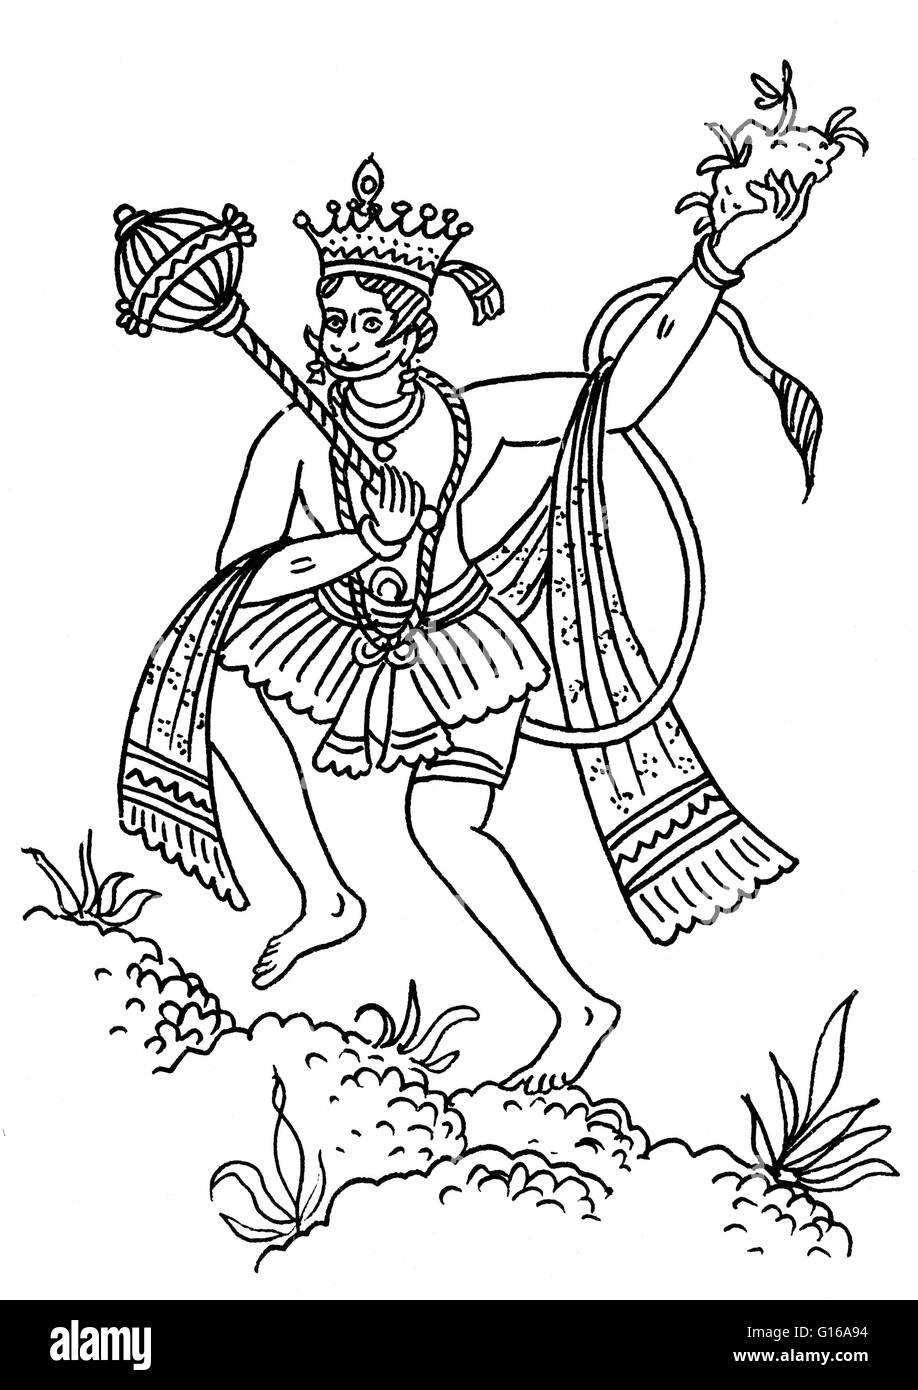 Hanuman den medizinischen Berg zu transportieren. Hanuman, zusammen mit Ganesha und Garuda, gehört zu den drei wichtigsten tierischen Gottheiten in der hinduistischen Mythologie, die nach der Vedic Periode in der indischen Geschichte entwickelt hat. Er ist überall in Indien als der Affe liebte. Stockfoto